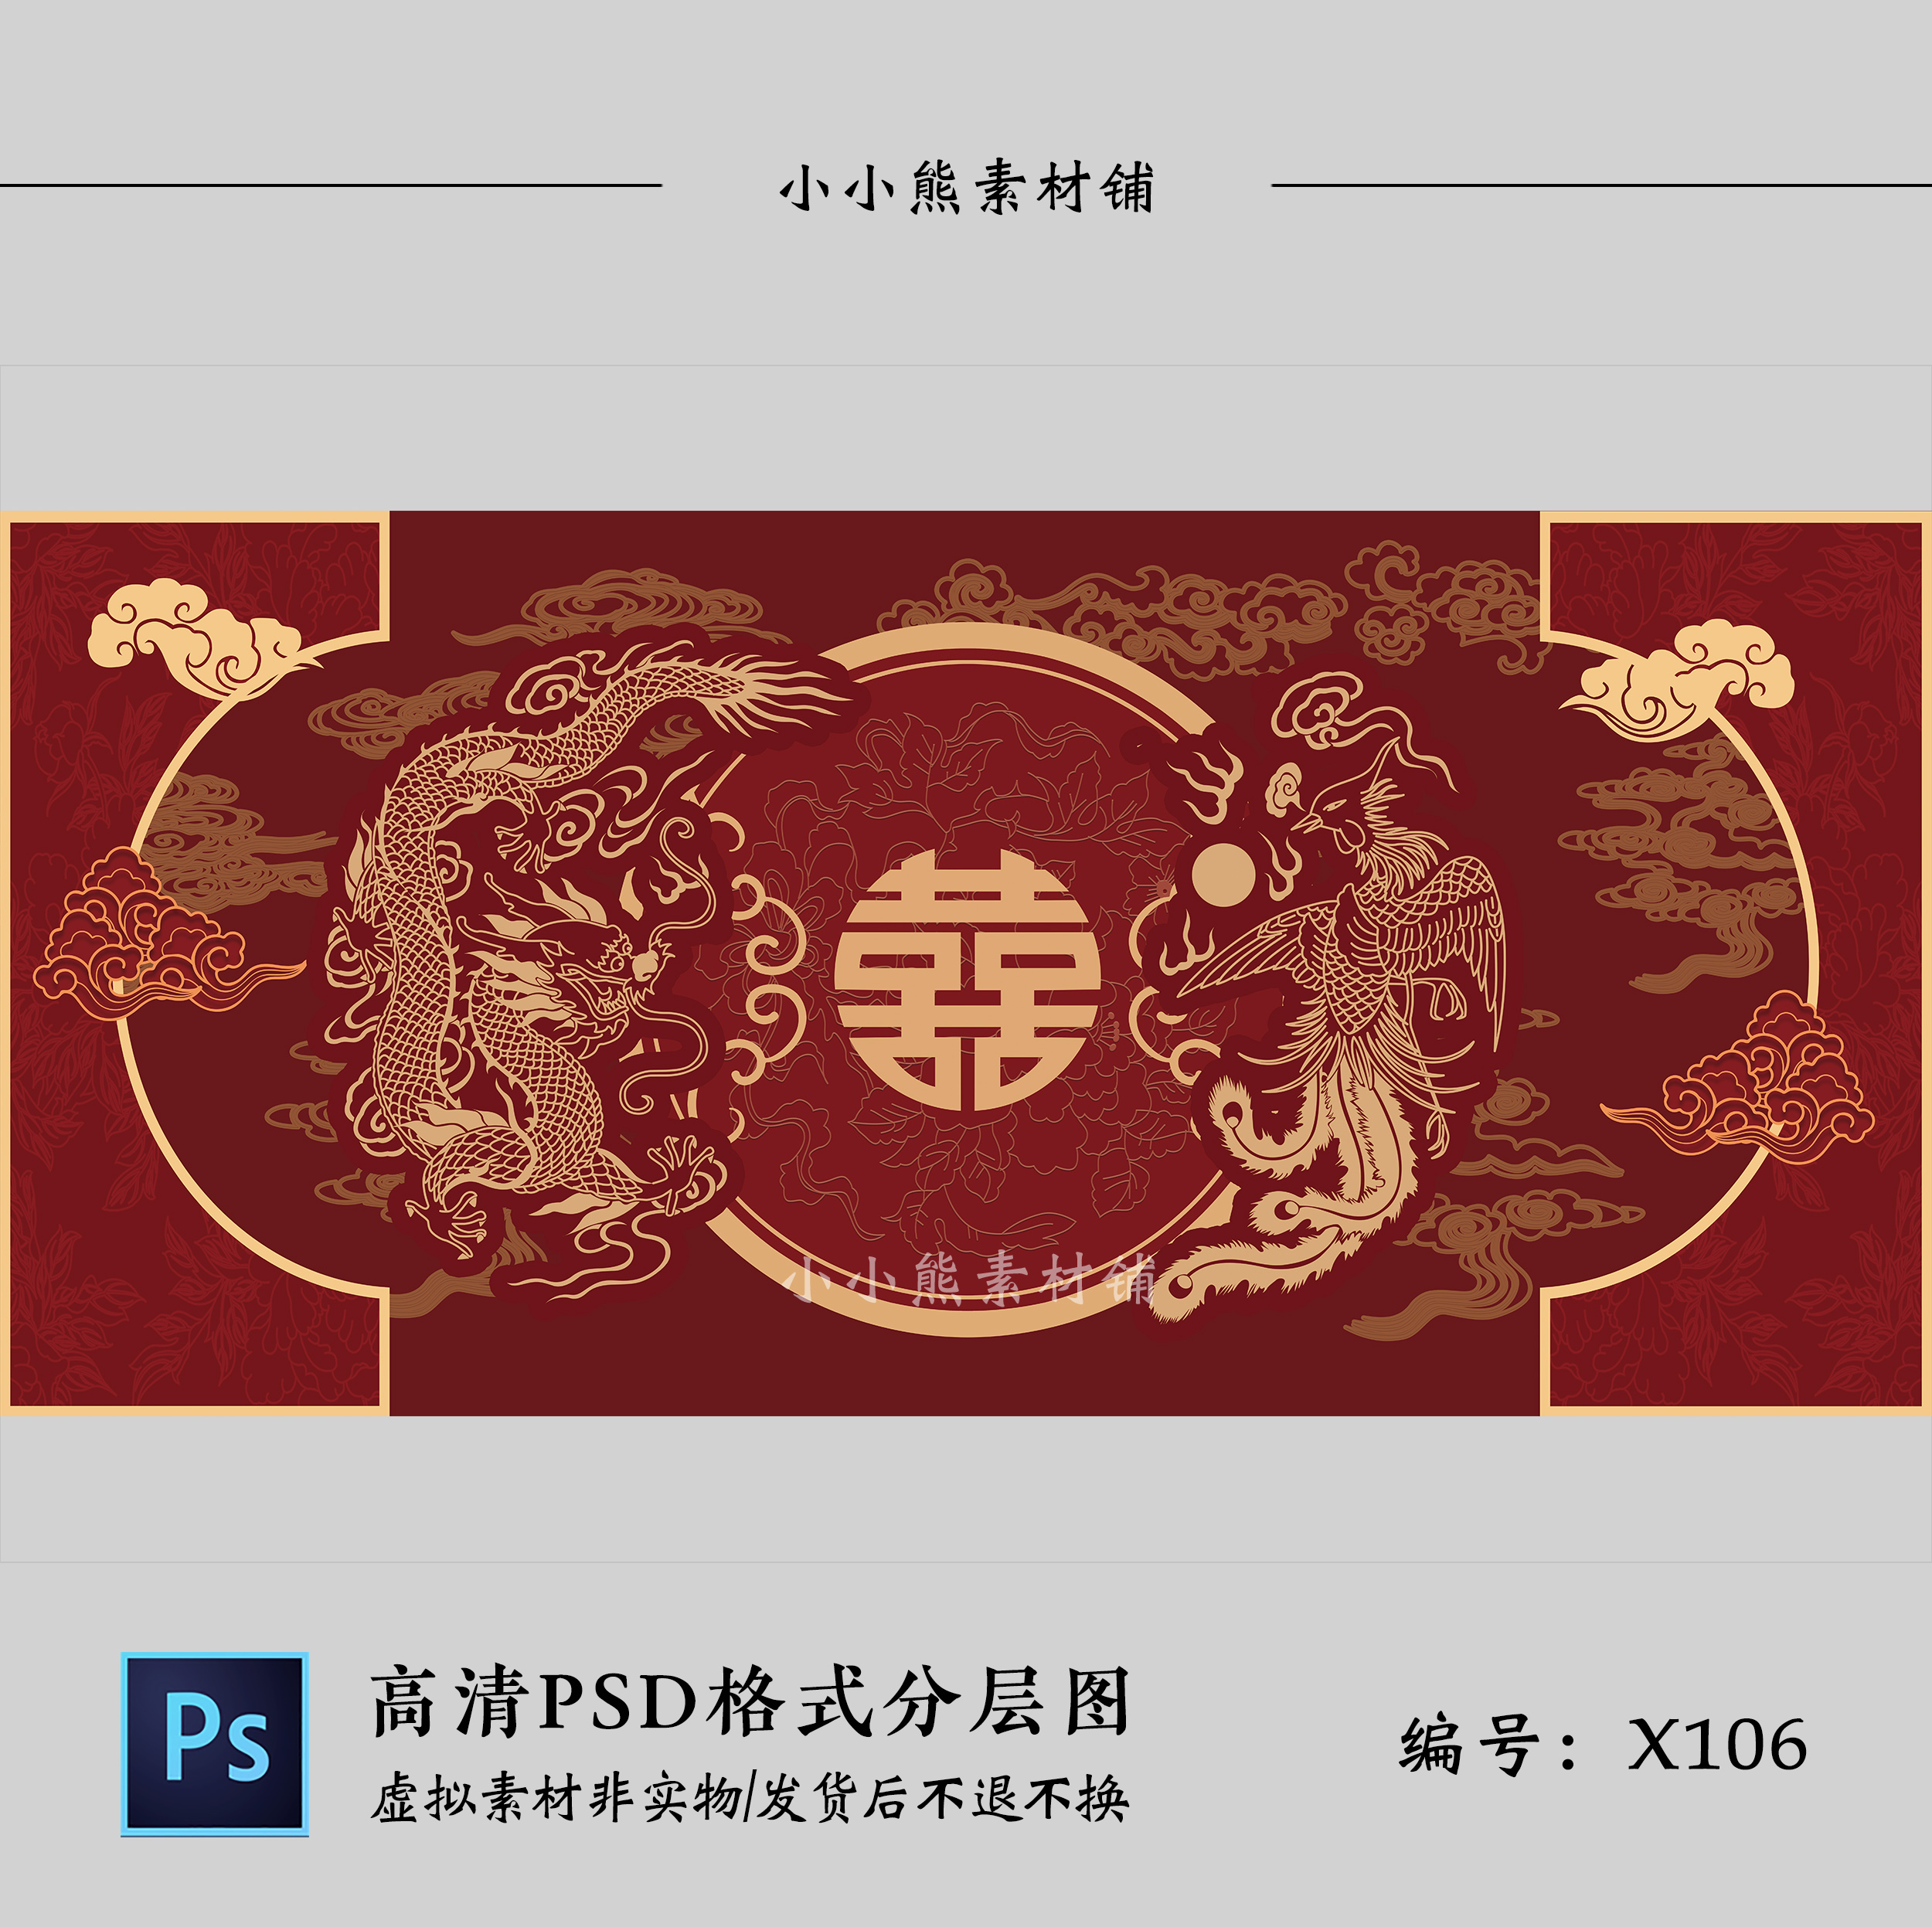 暗红色中式龙凤喜字婚礼舞台背景设计效果图KT板喷绘布置PSD模板